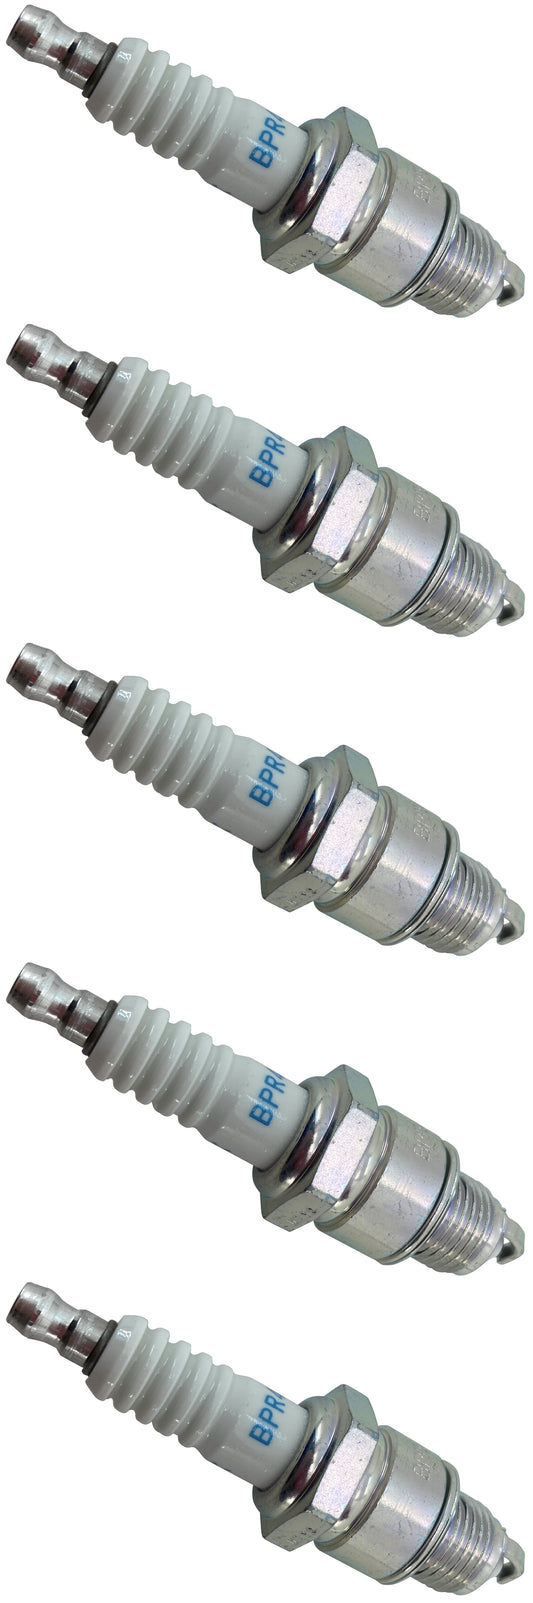 Honda Original Equipment Spark Plug (Pack of 5) - 98076-54747